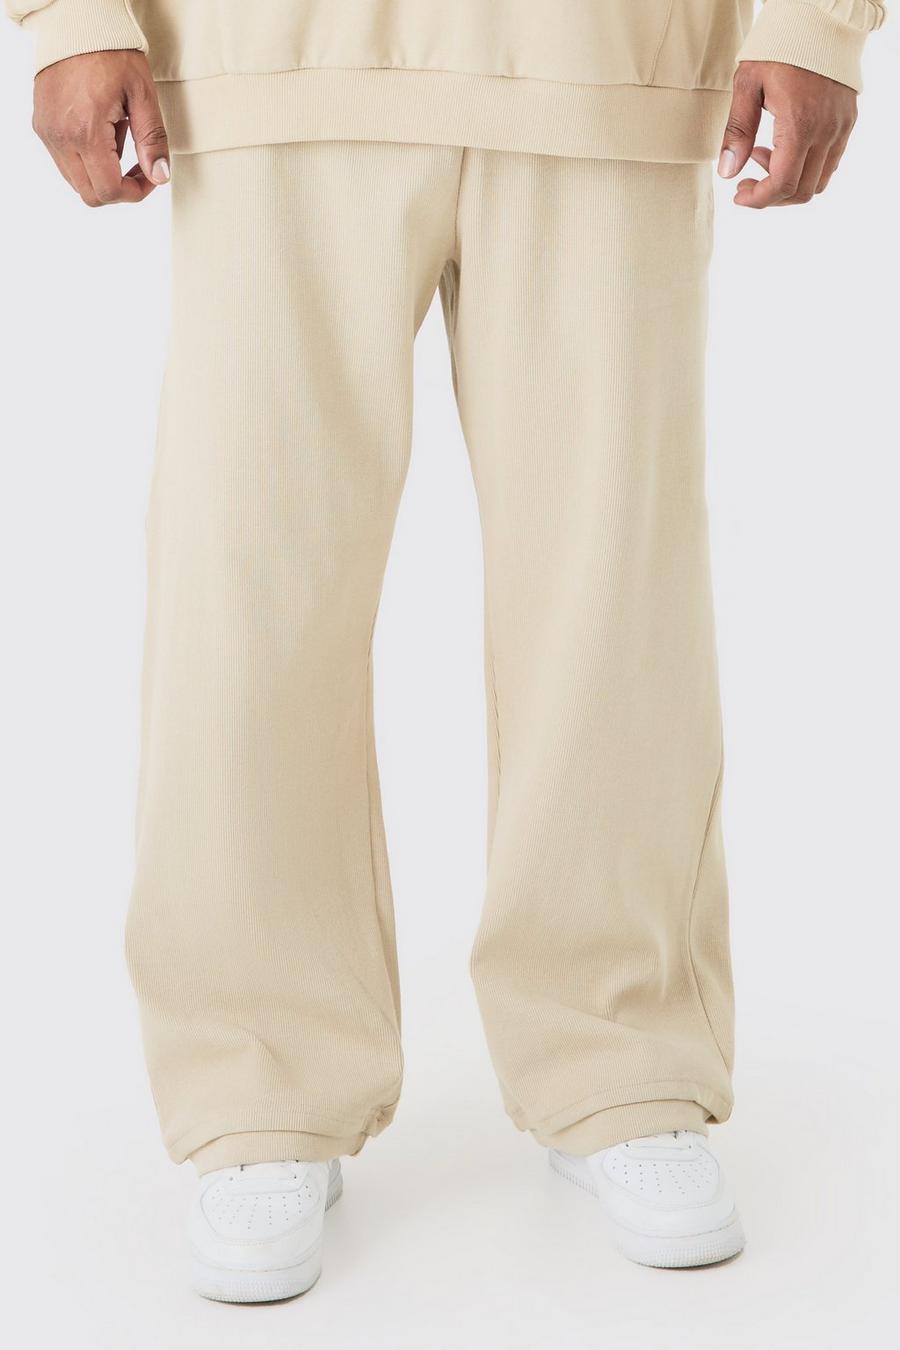 Pantaloni tuta Plus Size EDITION pesanti dritti a coste con spacco sul fondo, Stone